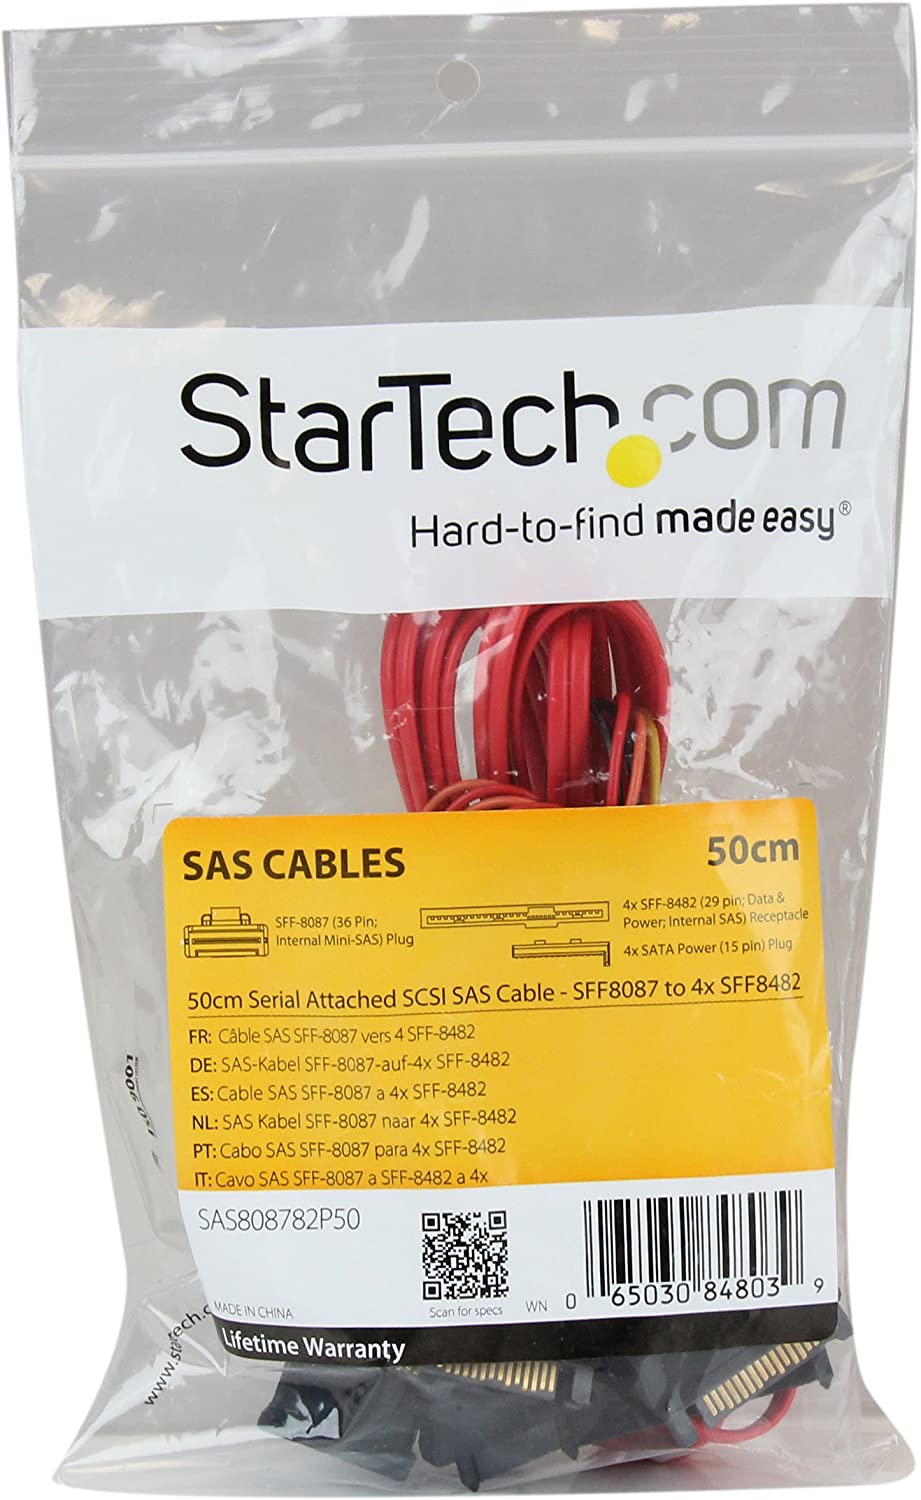 StarTech.com 50cm Internal Serial Attached SCSI Mini SAS Cable - SFF8087 to 4x SFF8482 - Internal Mini SAS Cable (SAS808782P50) , Red